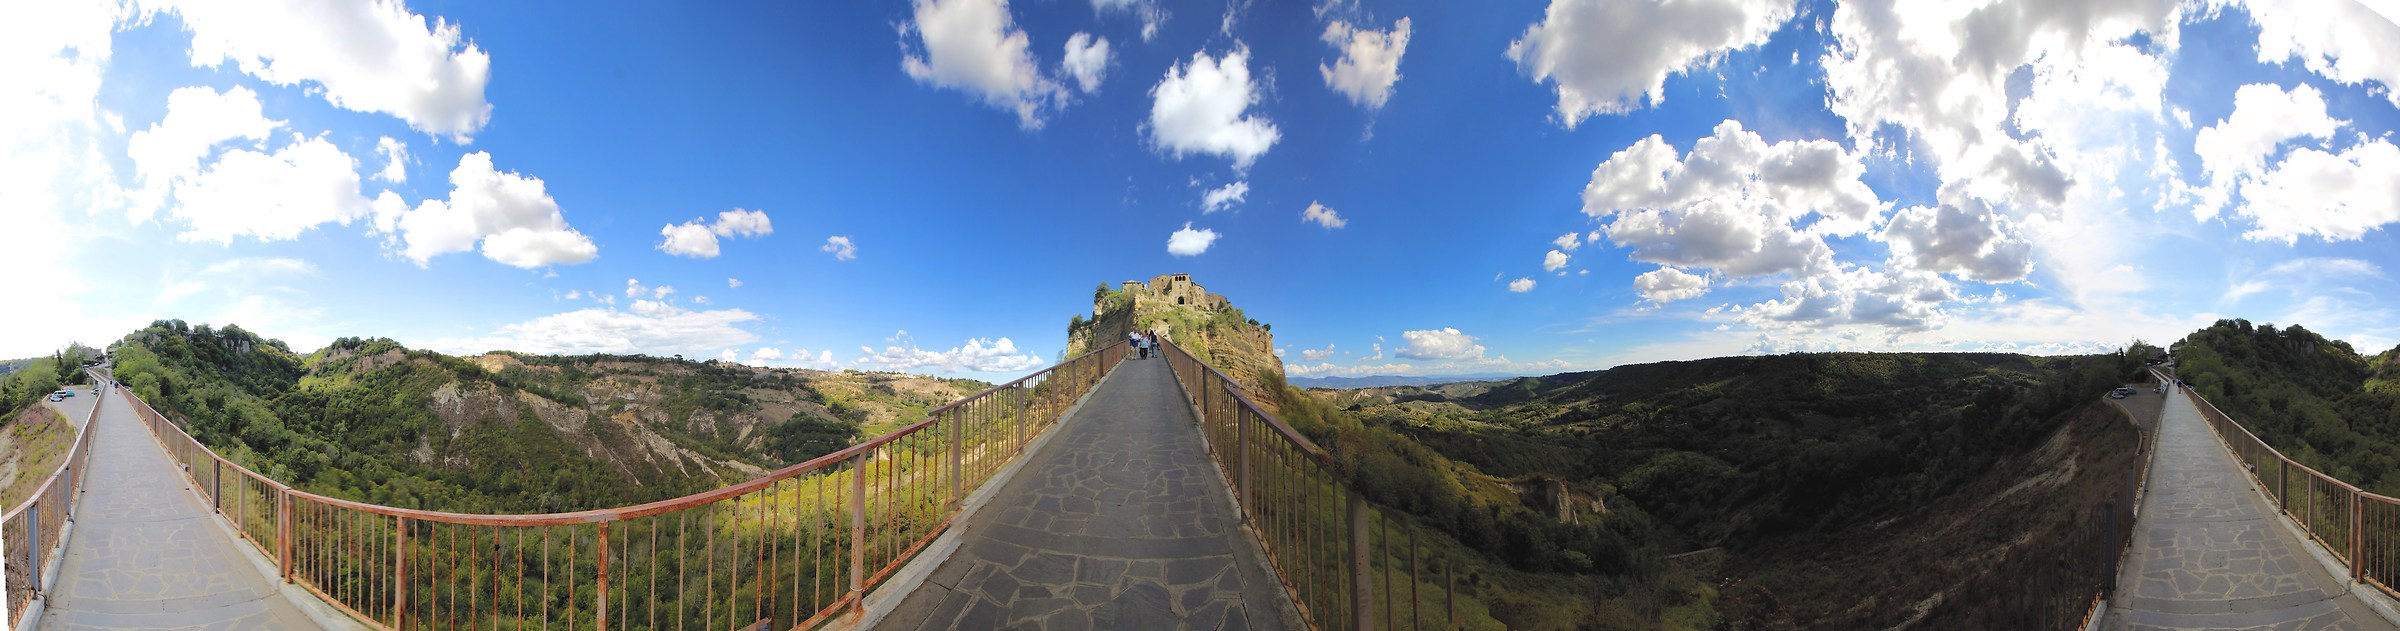 versione a 360° di Civita di Bagnoreggio...